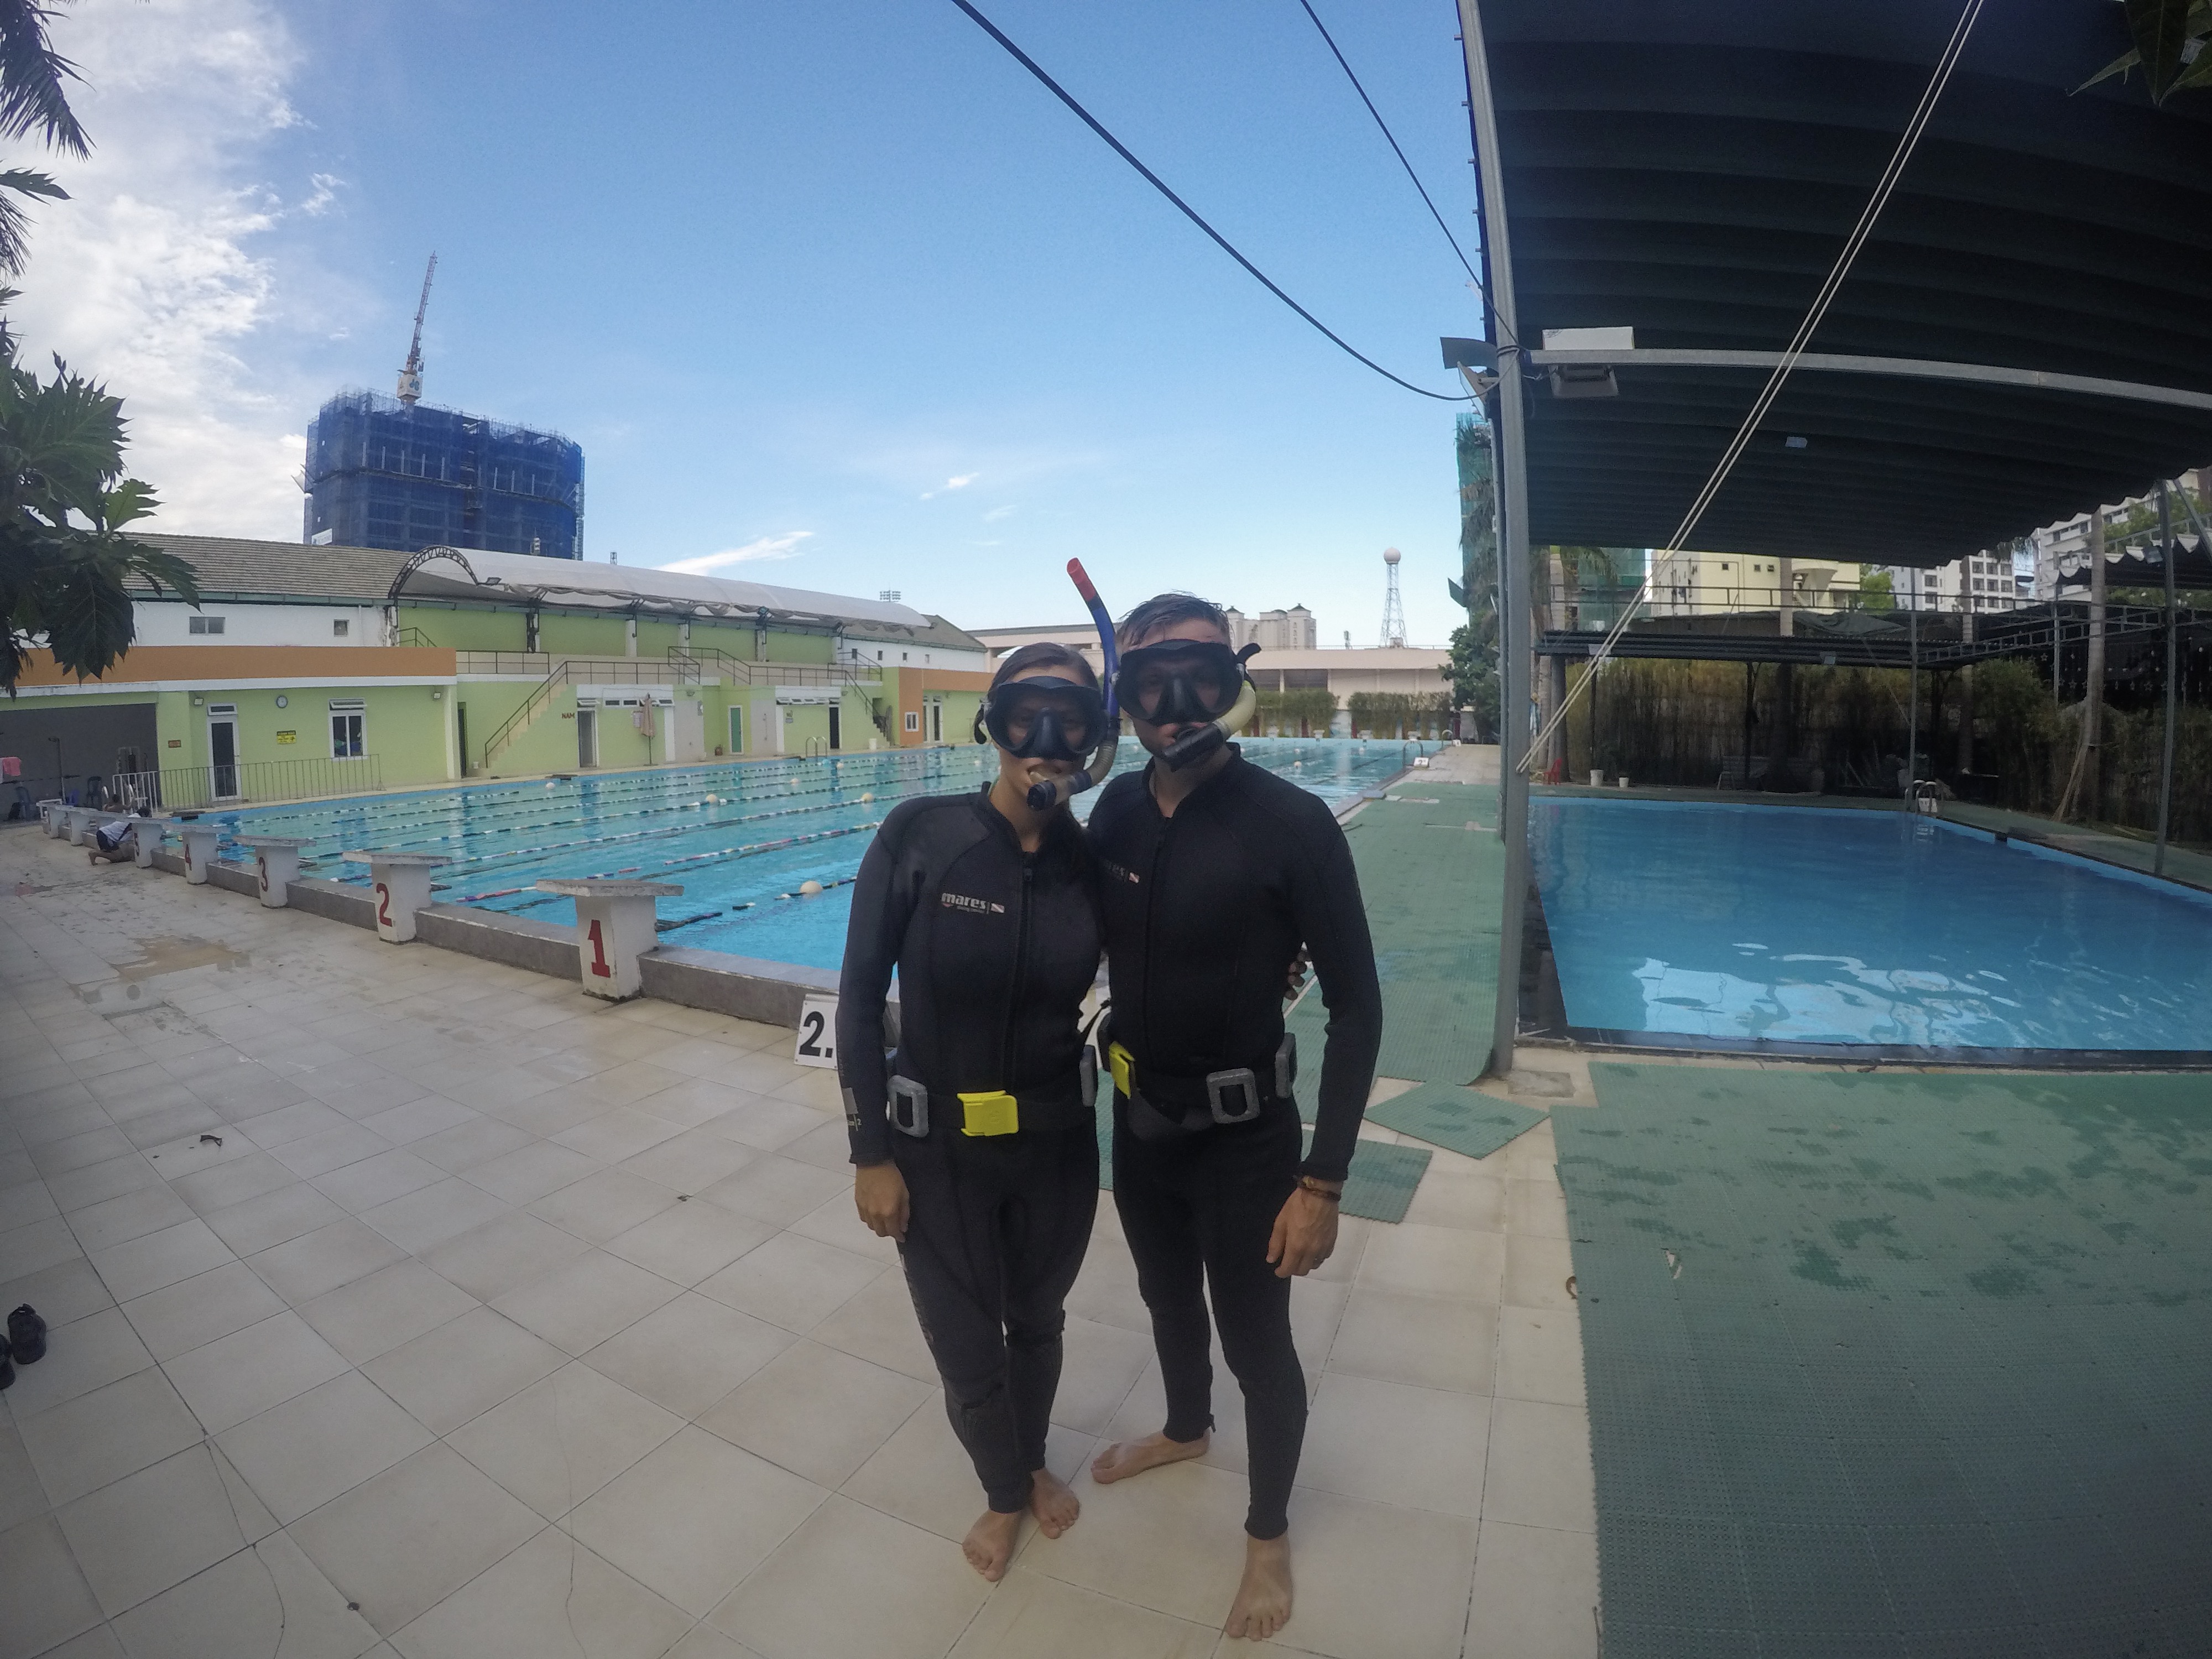 scuba diving, Vietnam, pool day, padi